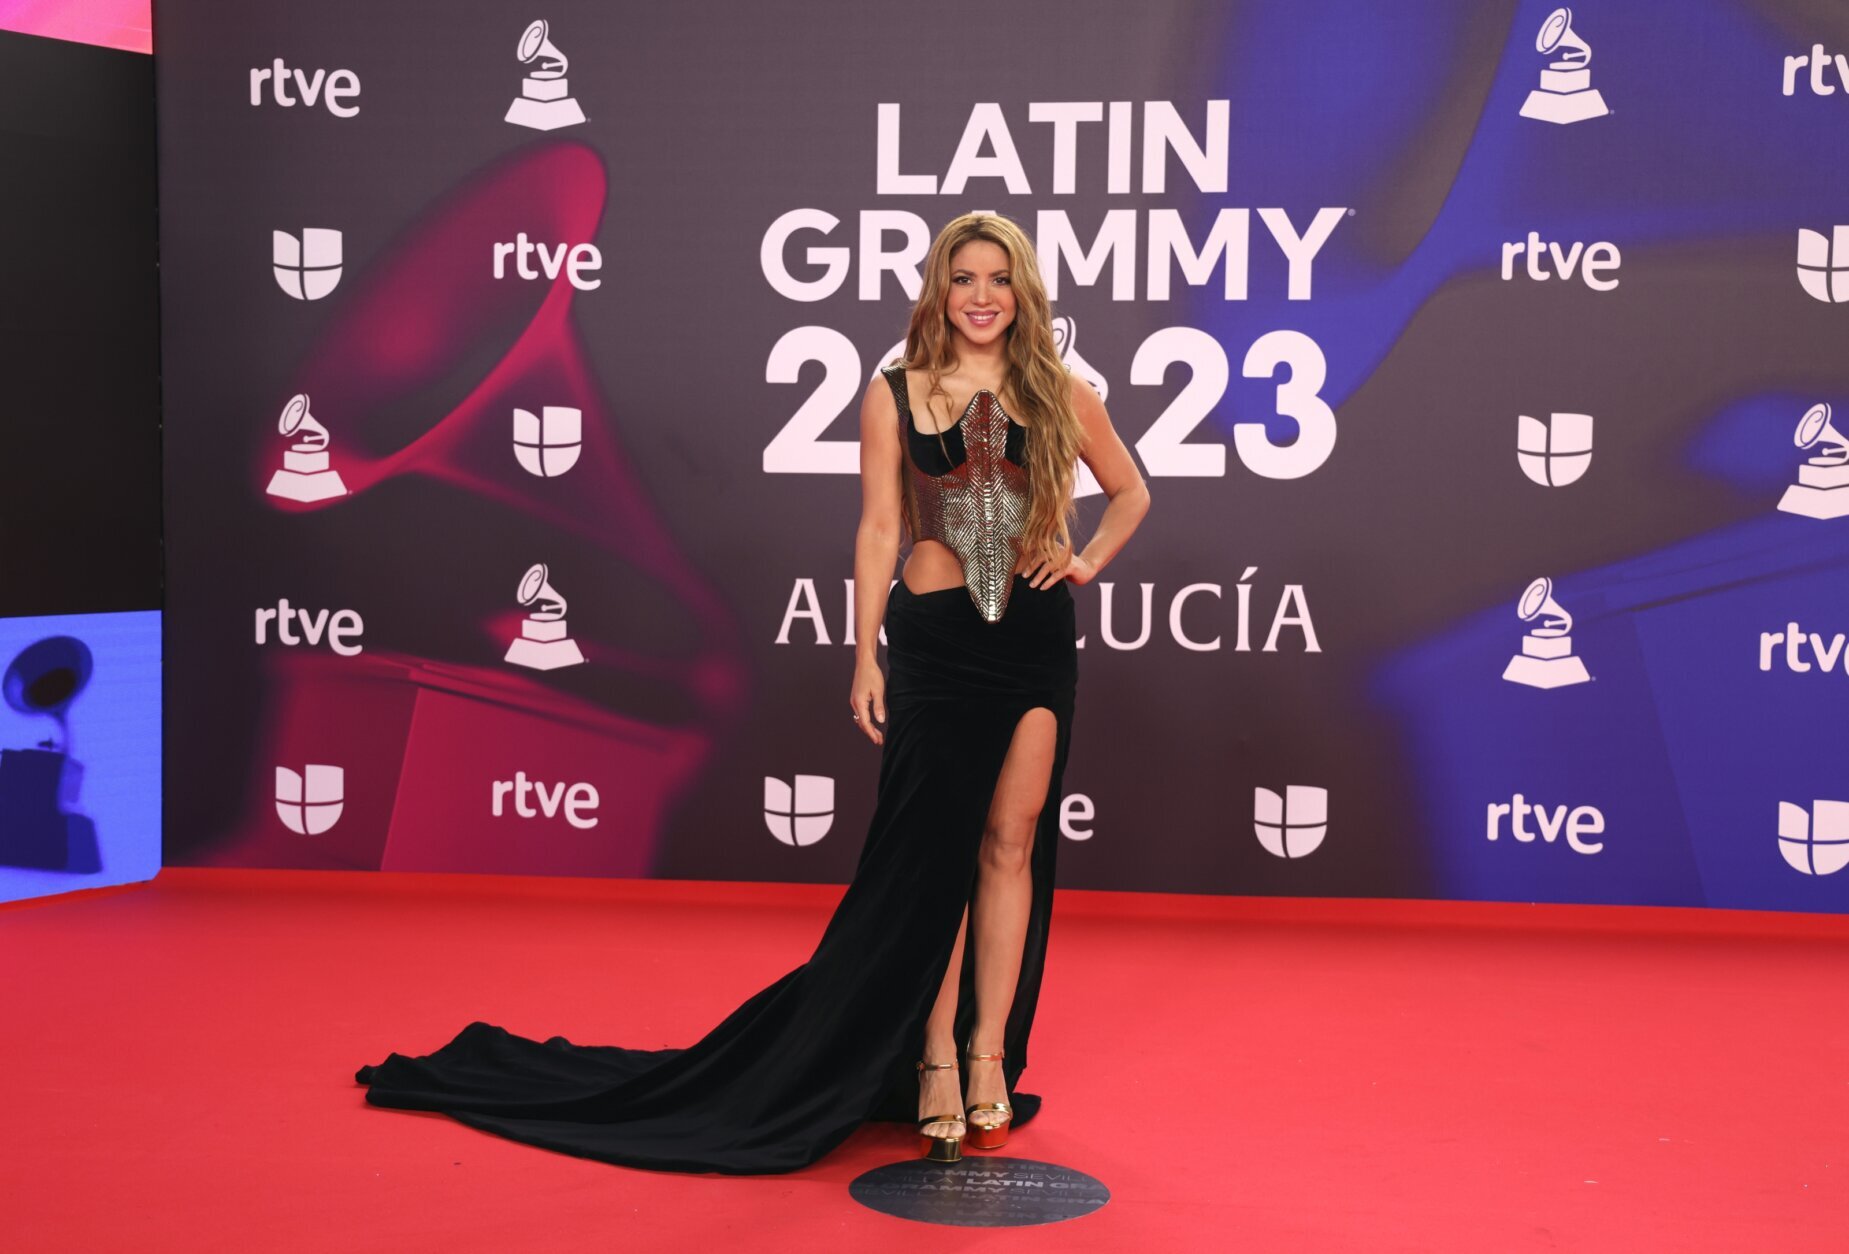 Karol G wins best album at Latin Grammys - Chicago Sun-Times